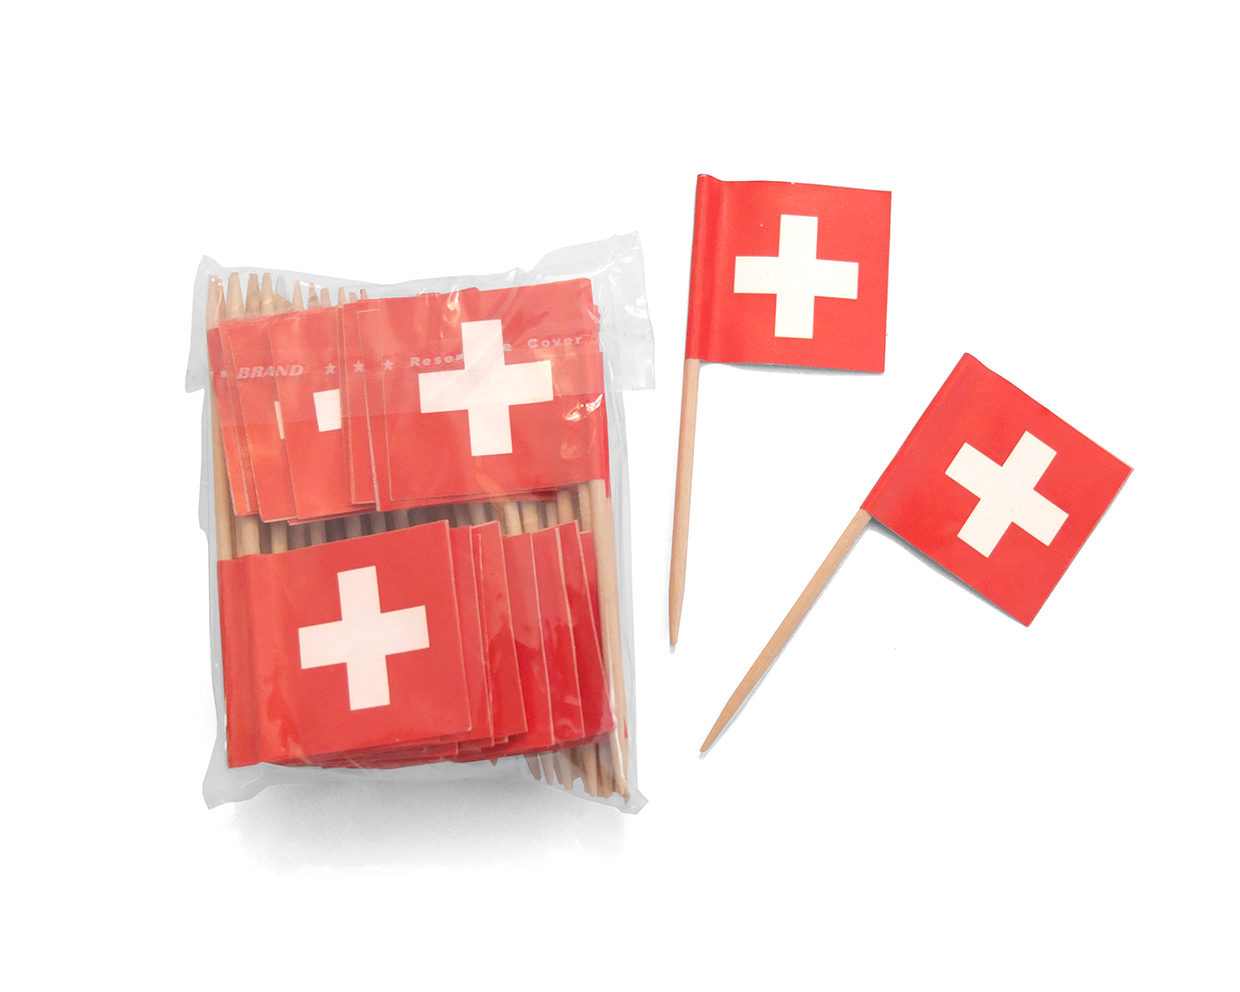 Zahnstocher mit Schweizer Fahne